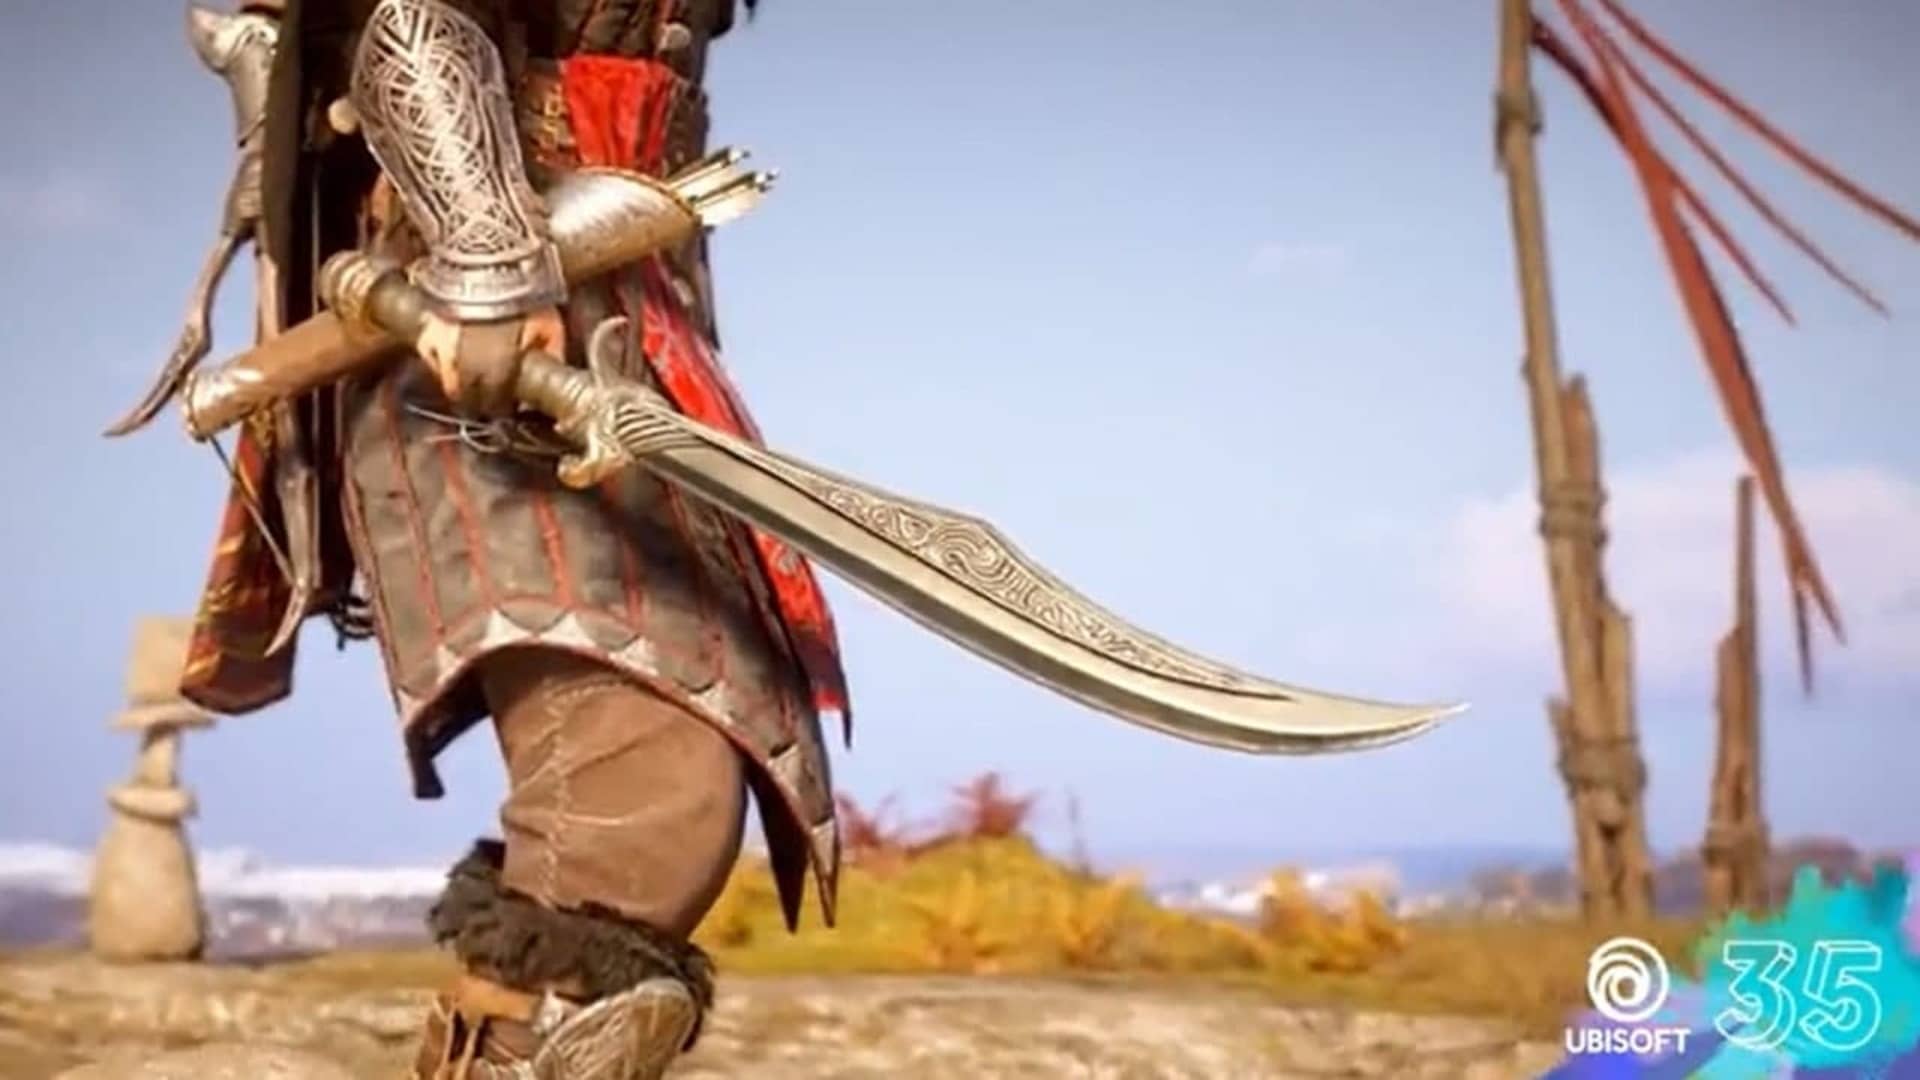 Assassin's Creed Valhalla agrega la espada de Basim, ¿Cómo conseguirla?, GamersRD